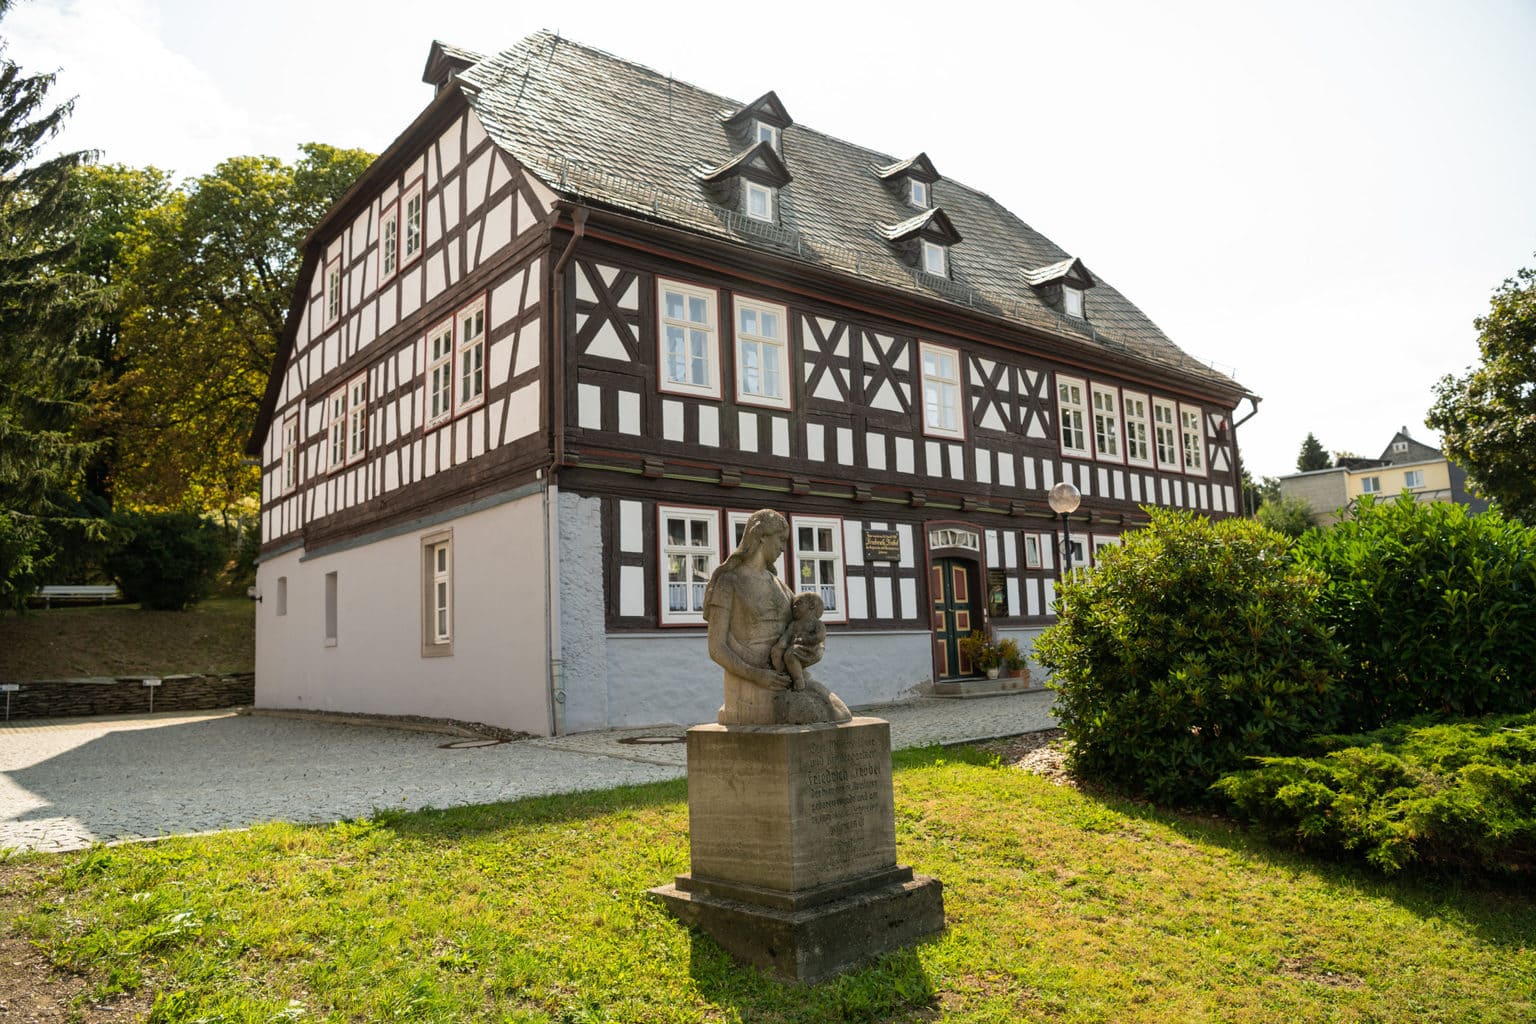 De Olitätenstube in het Thüringer Woud is een mooi vakwerkhuis